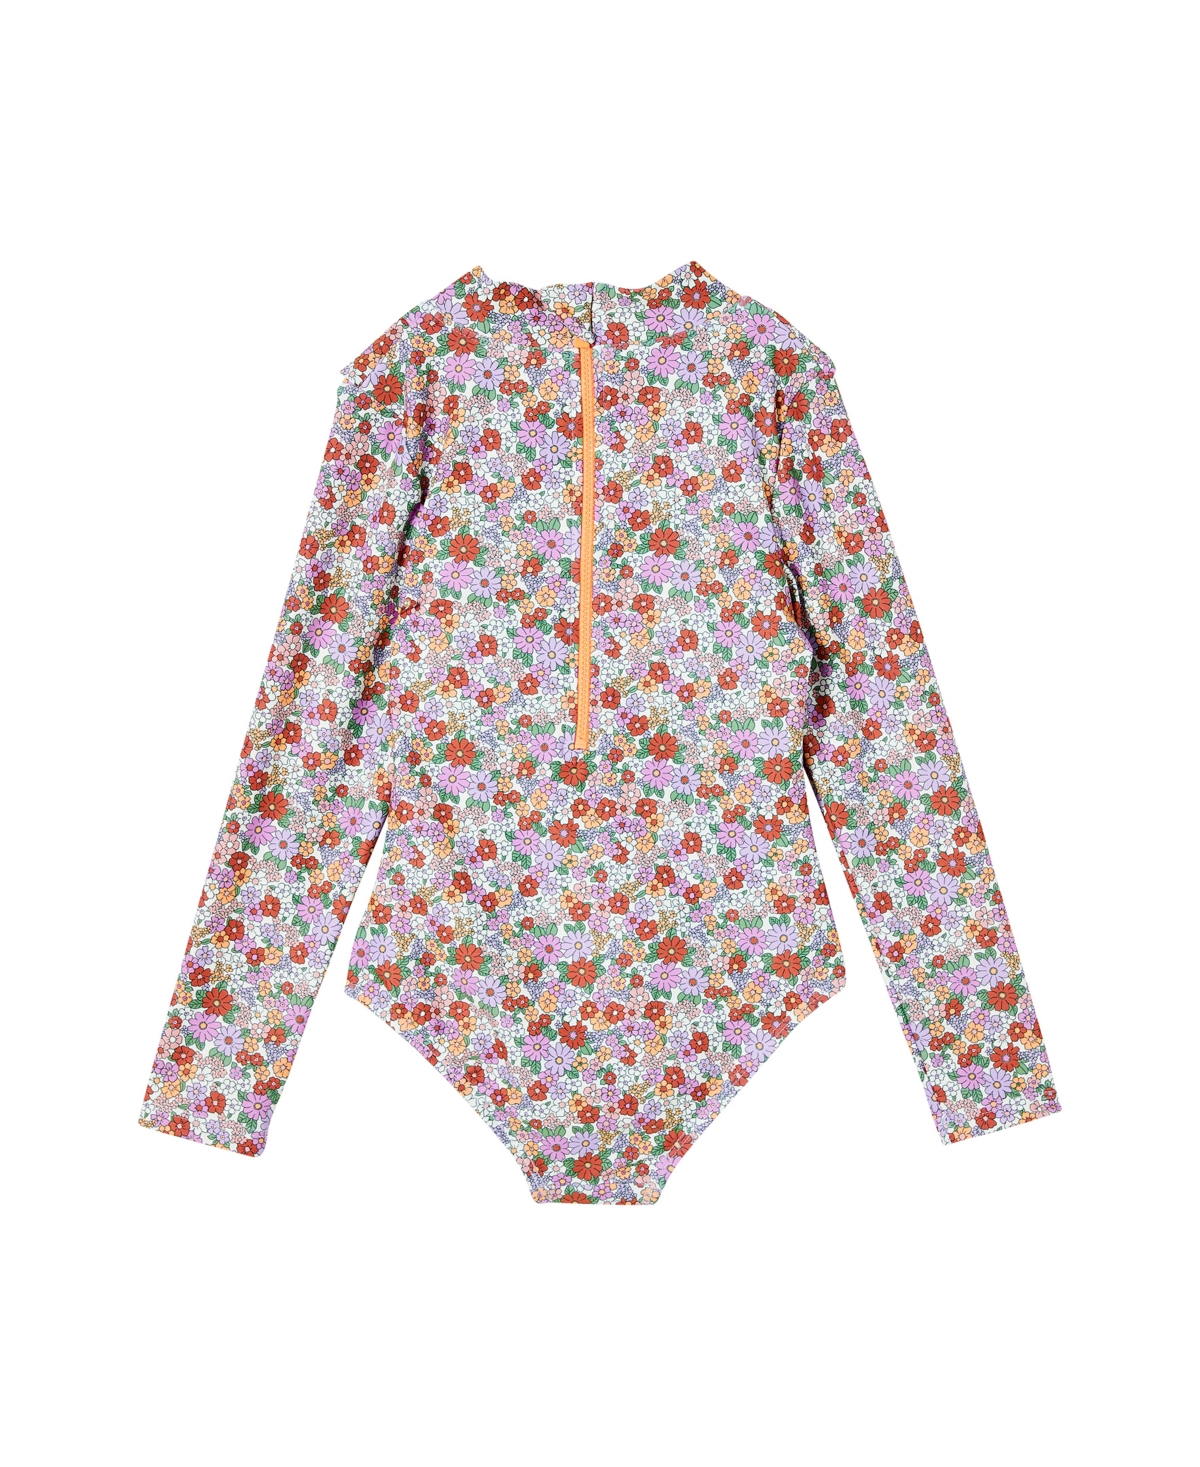 Shop Cotton On Little Girls Lydia Swimwear One Piece In Block Stripe Rainbow